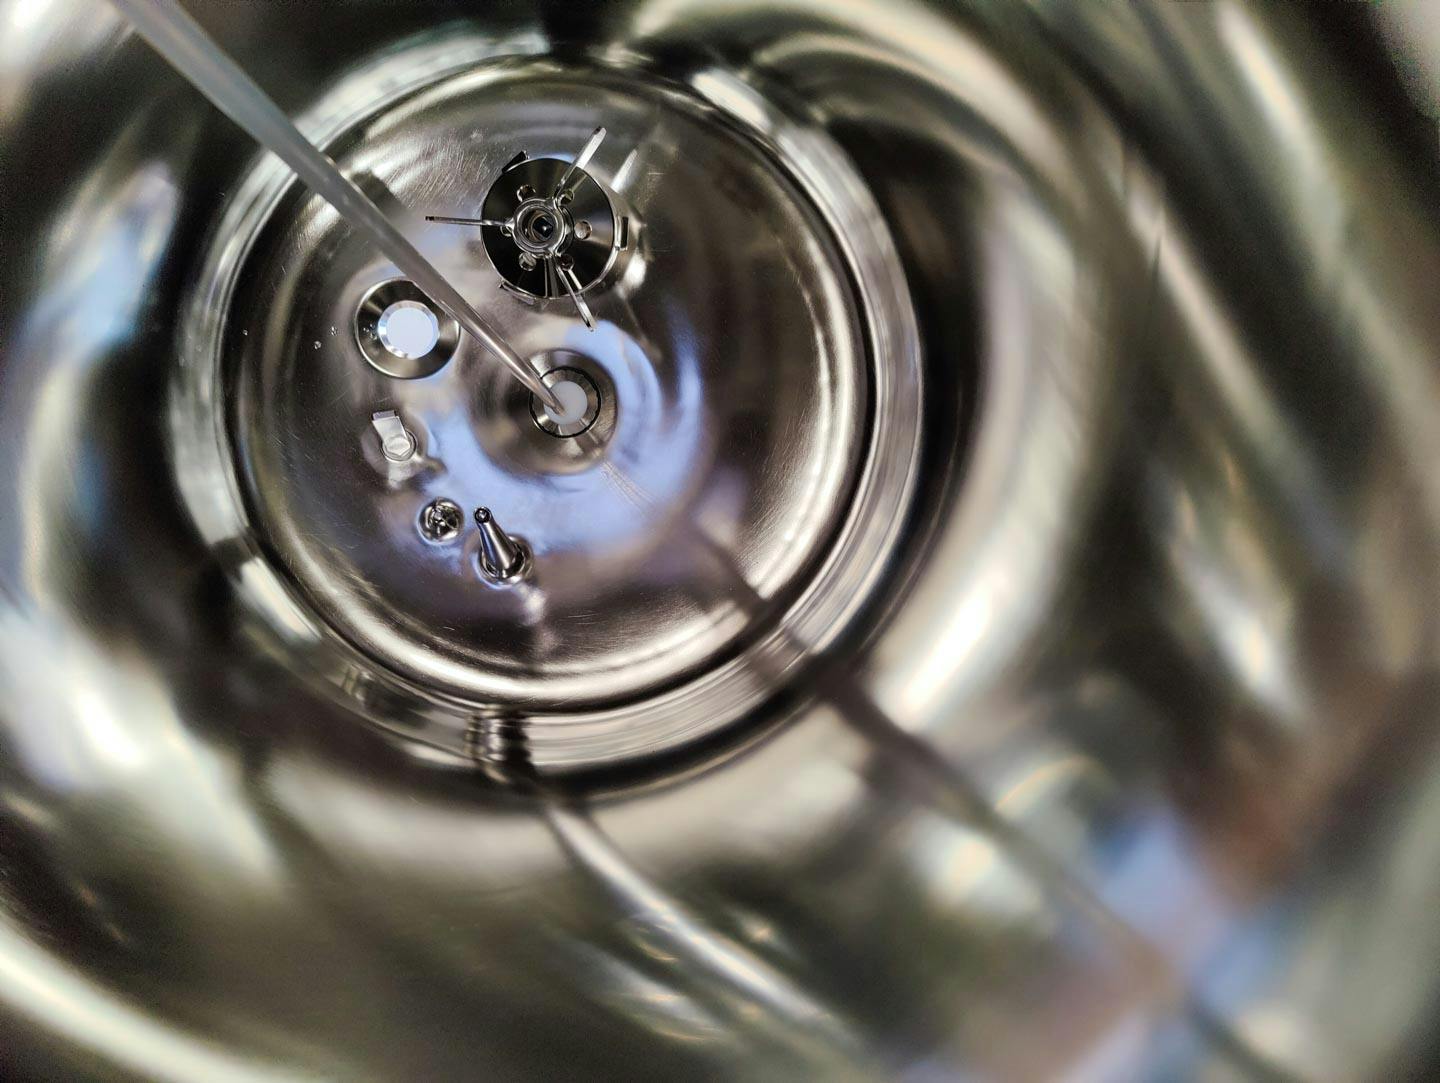 Edelstahl Maurer 130 Ltr. - Mirror-Polished Fraction Collector (Pharma Design) - Reactor de aço inoxidável - image 8